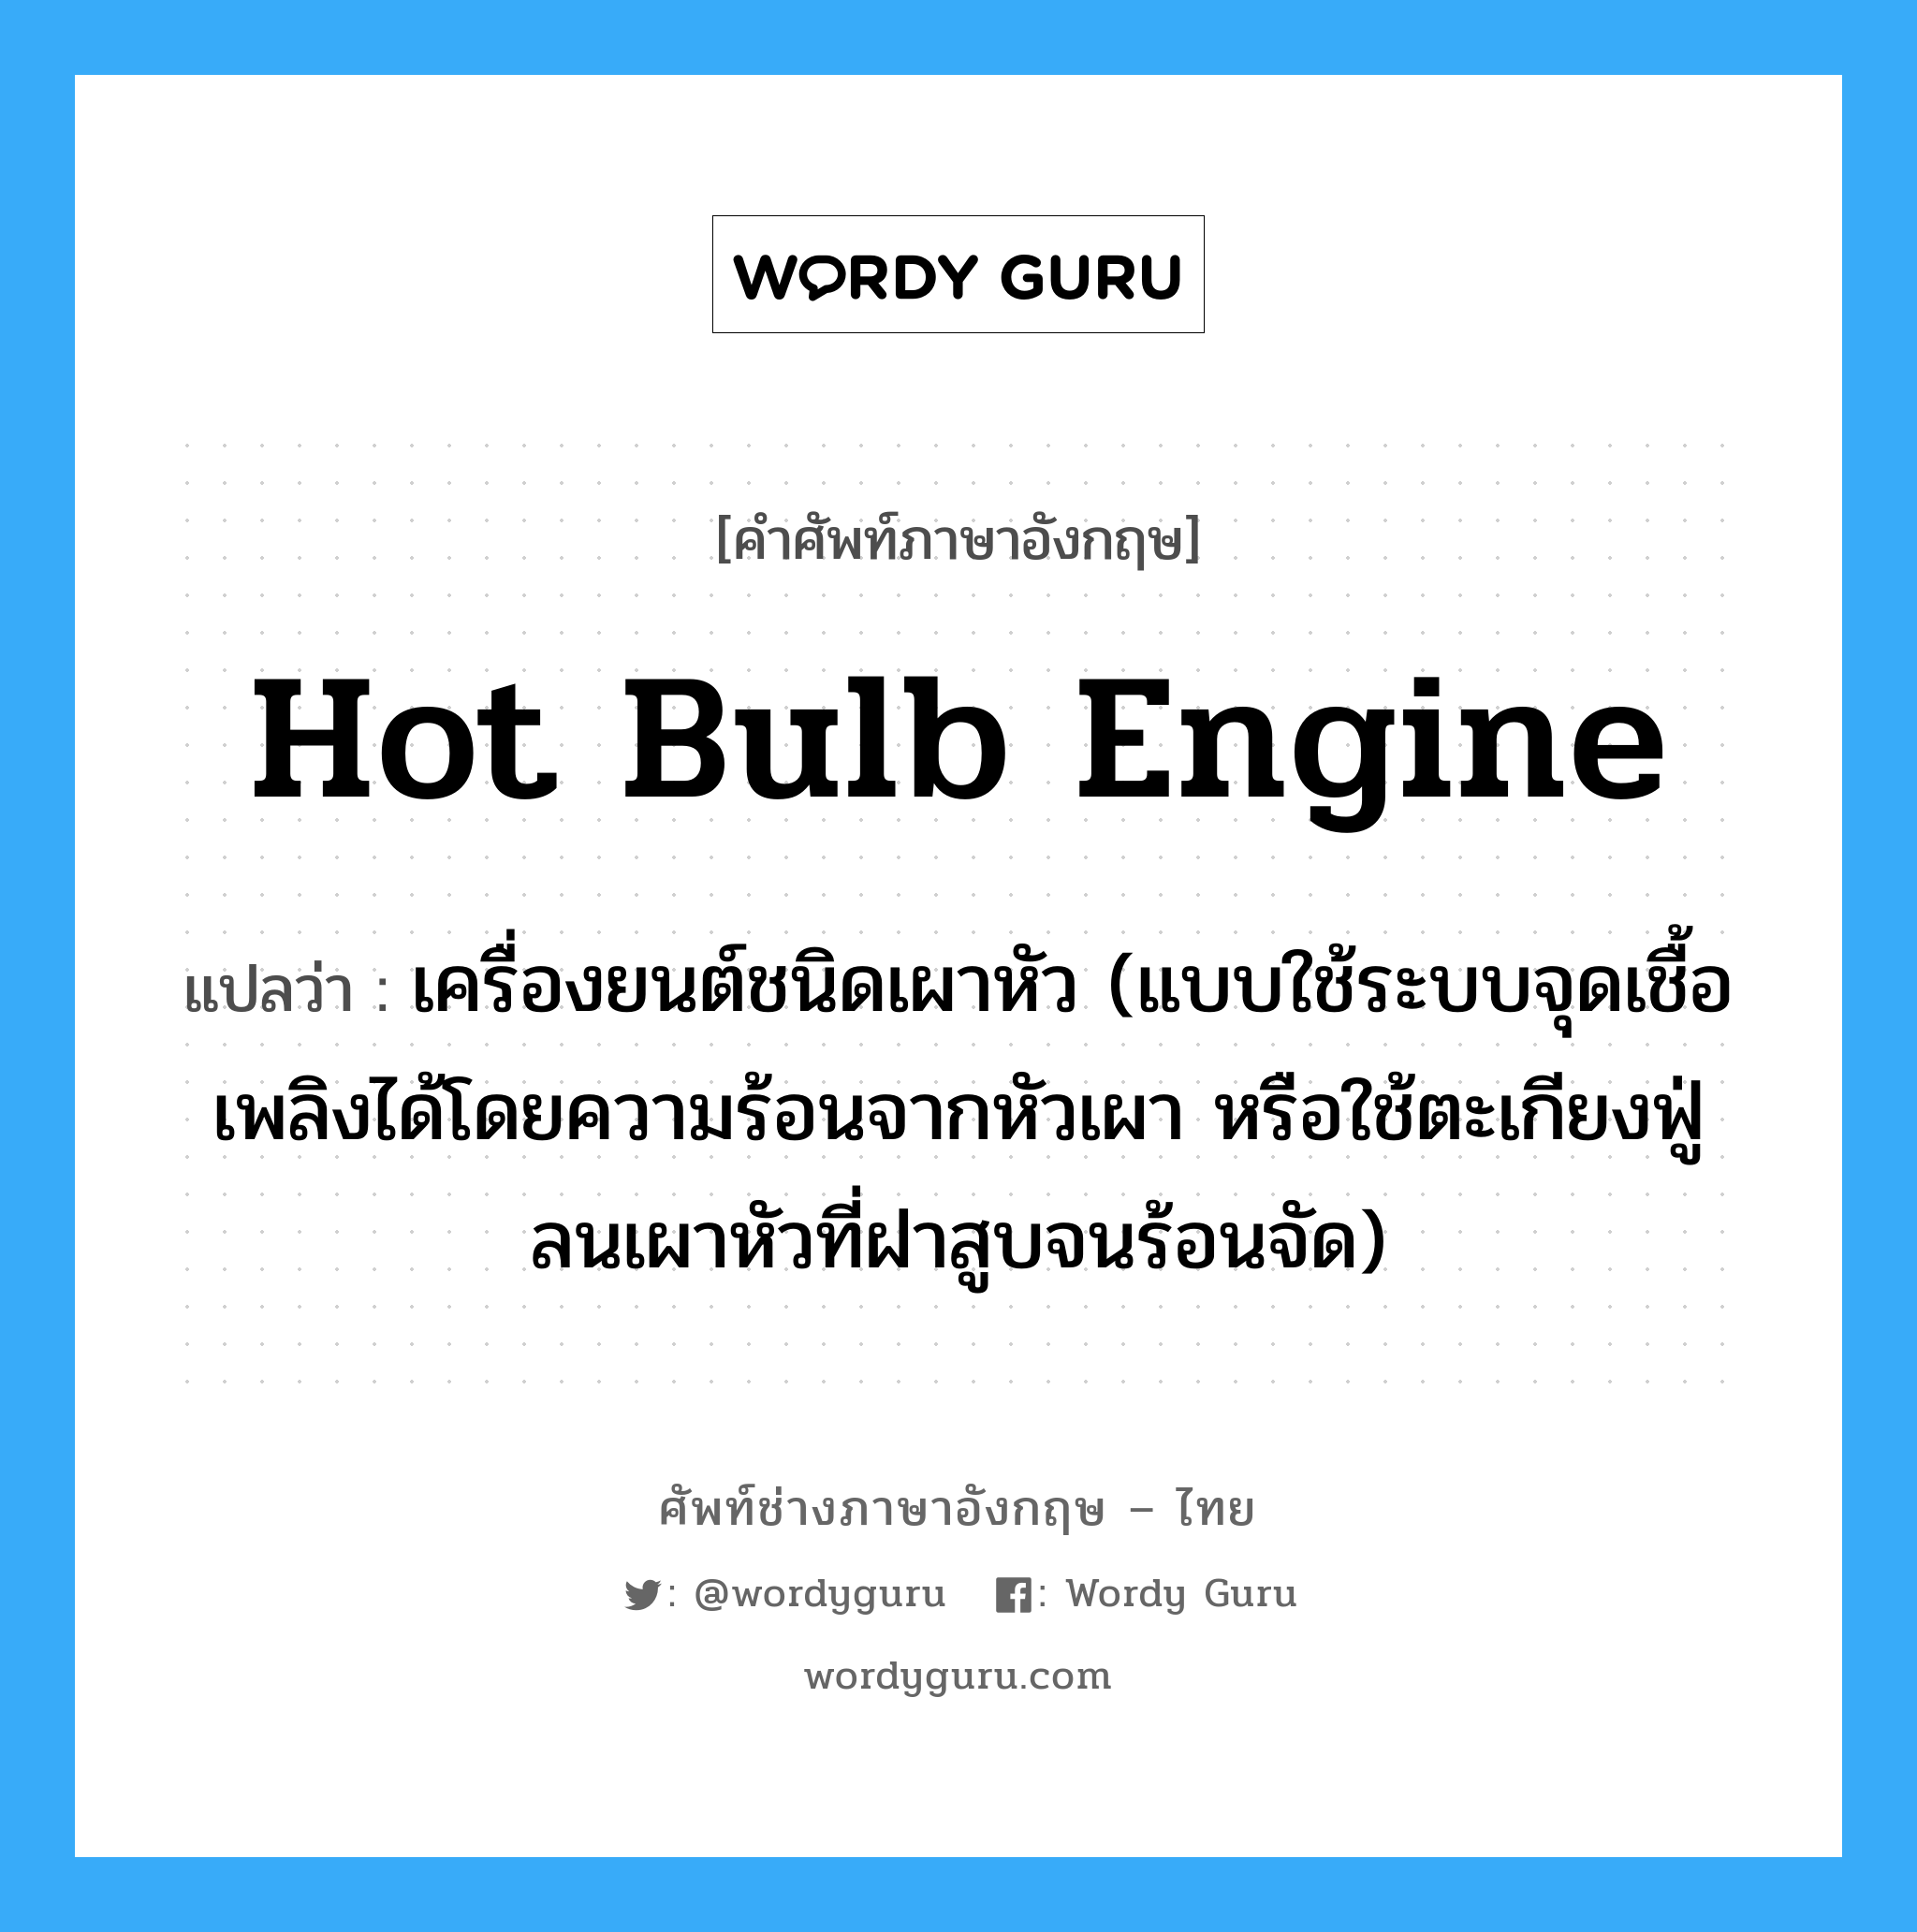 hot bulb engine แปลว่า?, คำศัพท์ช่างภาษาอังกฤษ - ไทย hot bulb engine คำศัพท์ภาษาอังกฤษ hot bulb engine แปลว่า เครื่องยนต์ชนิดเผาหัว (แบบใช้ระบบจุดเชื้อเพลิงได้โดยความร้อนจากหัวเผา หรือใช้ตะเกียงฟู่ลนเผาหัวที่ฝาสูบจนร้อนจัด)